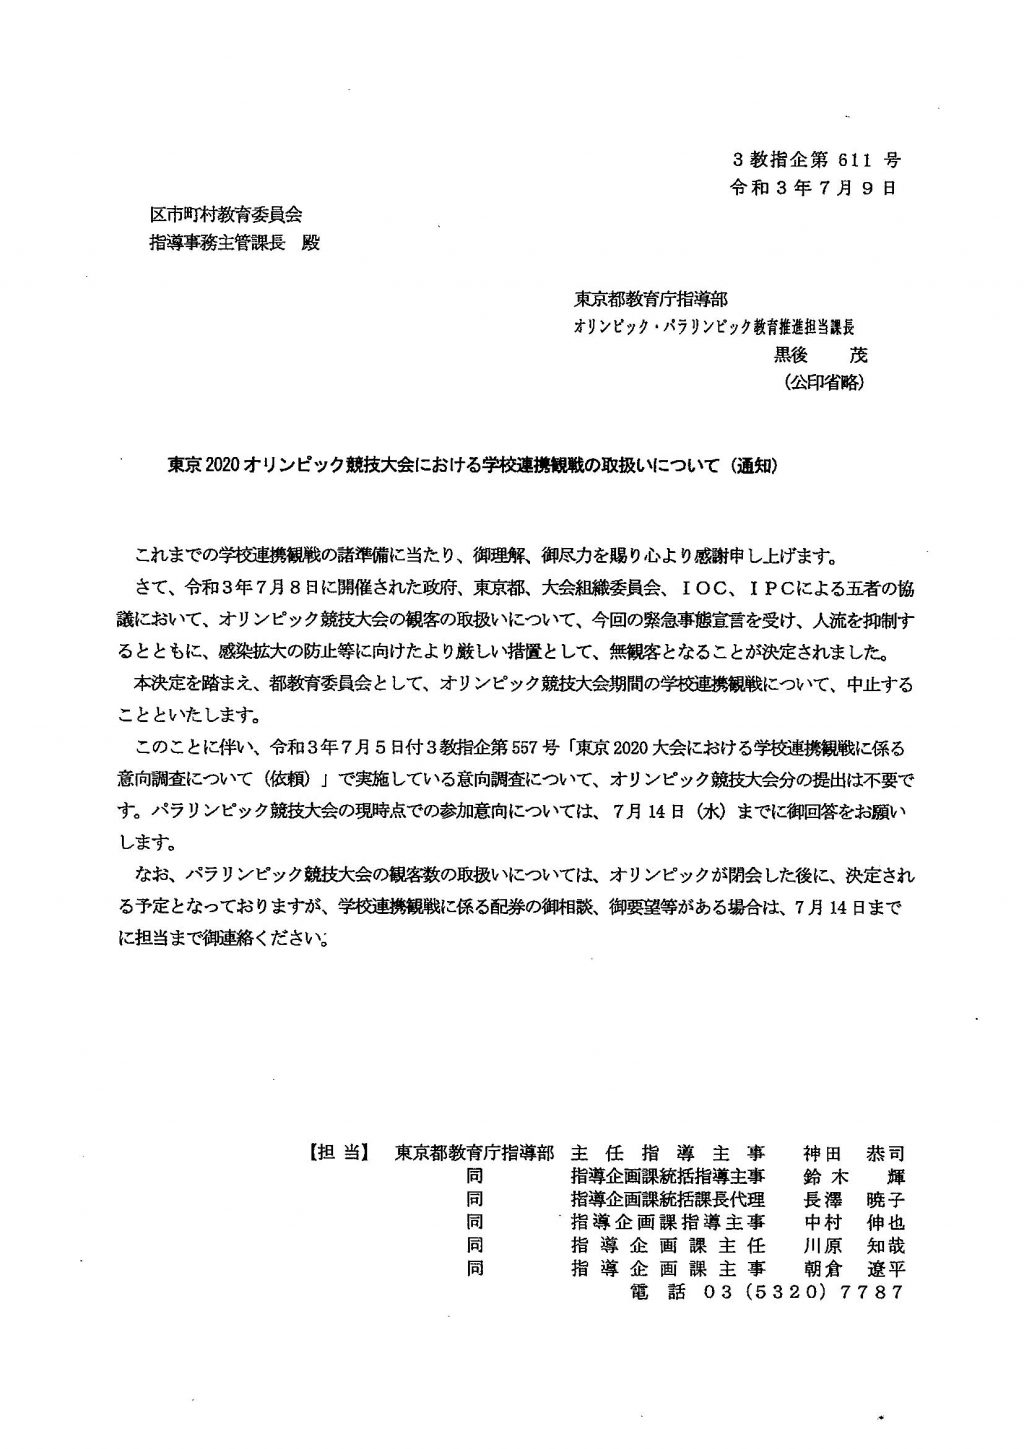 東京五輪 学校連携観戦／都教育委員会が中止を通知 | JCP TOKYO